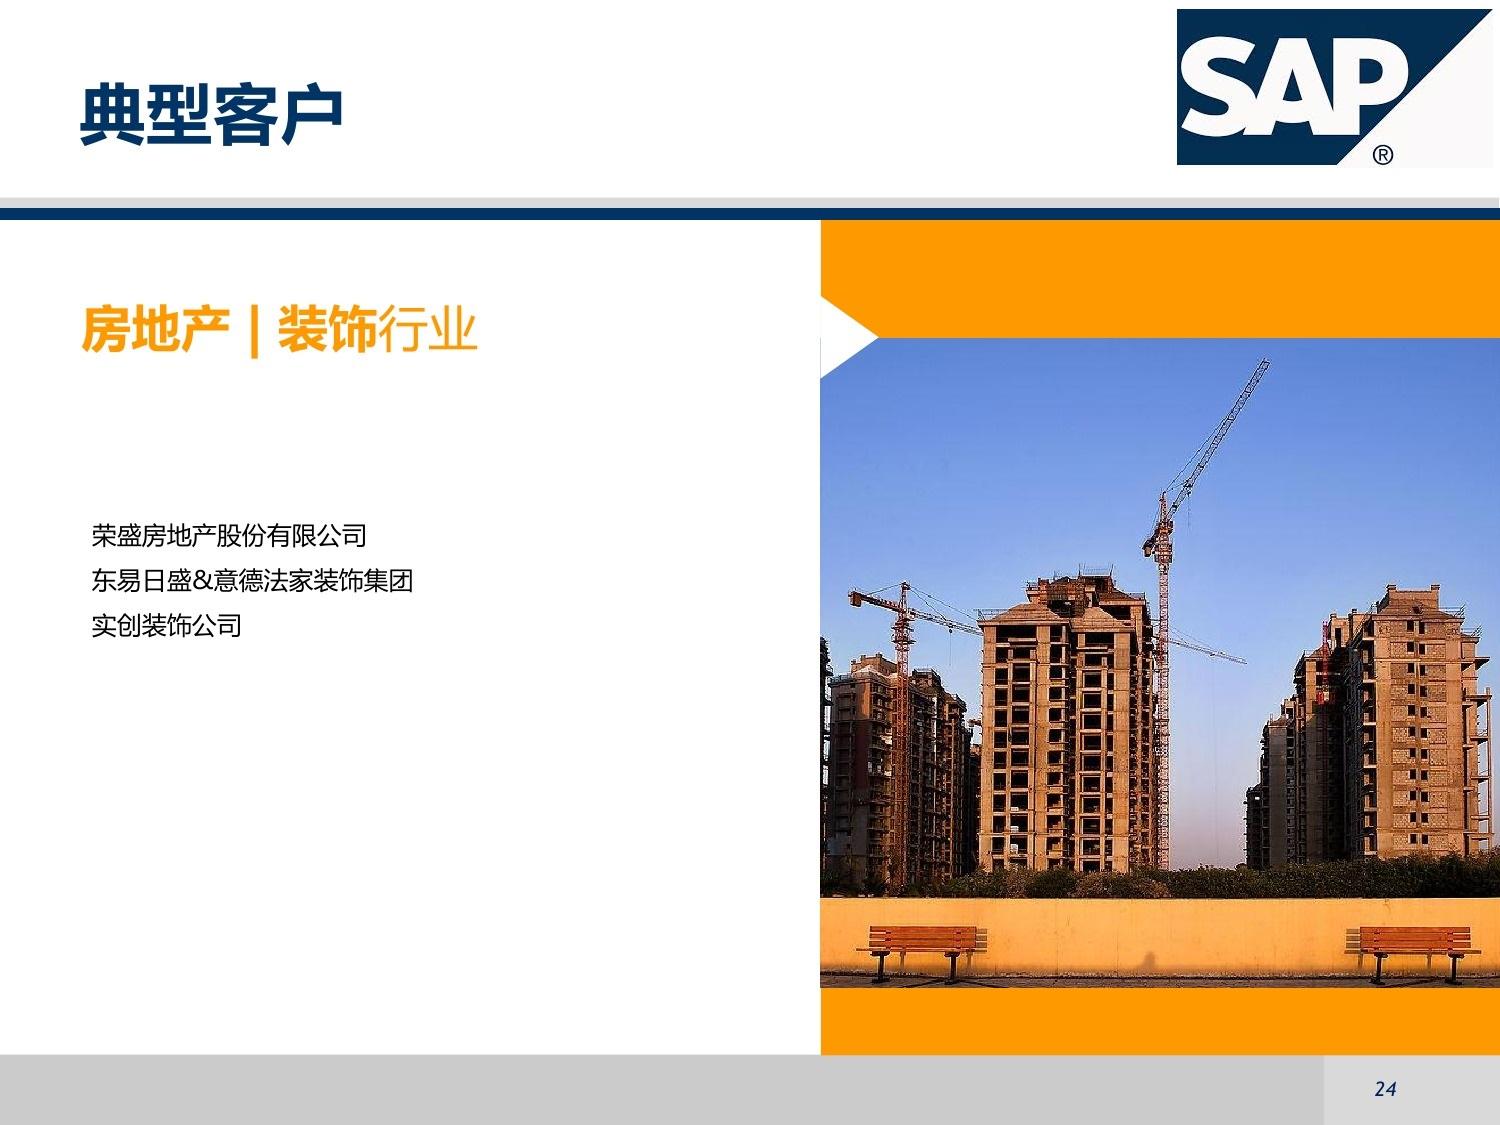 目前中国大陆有用SAP的大型企业有哪些?包括